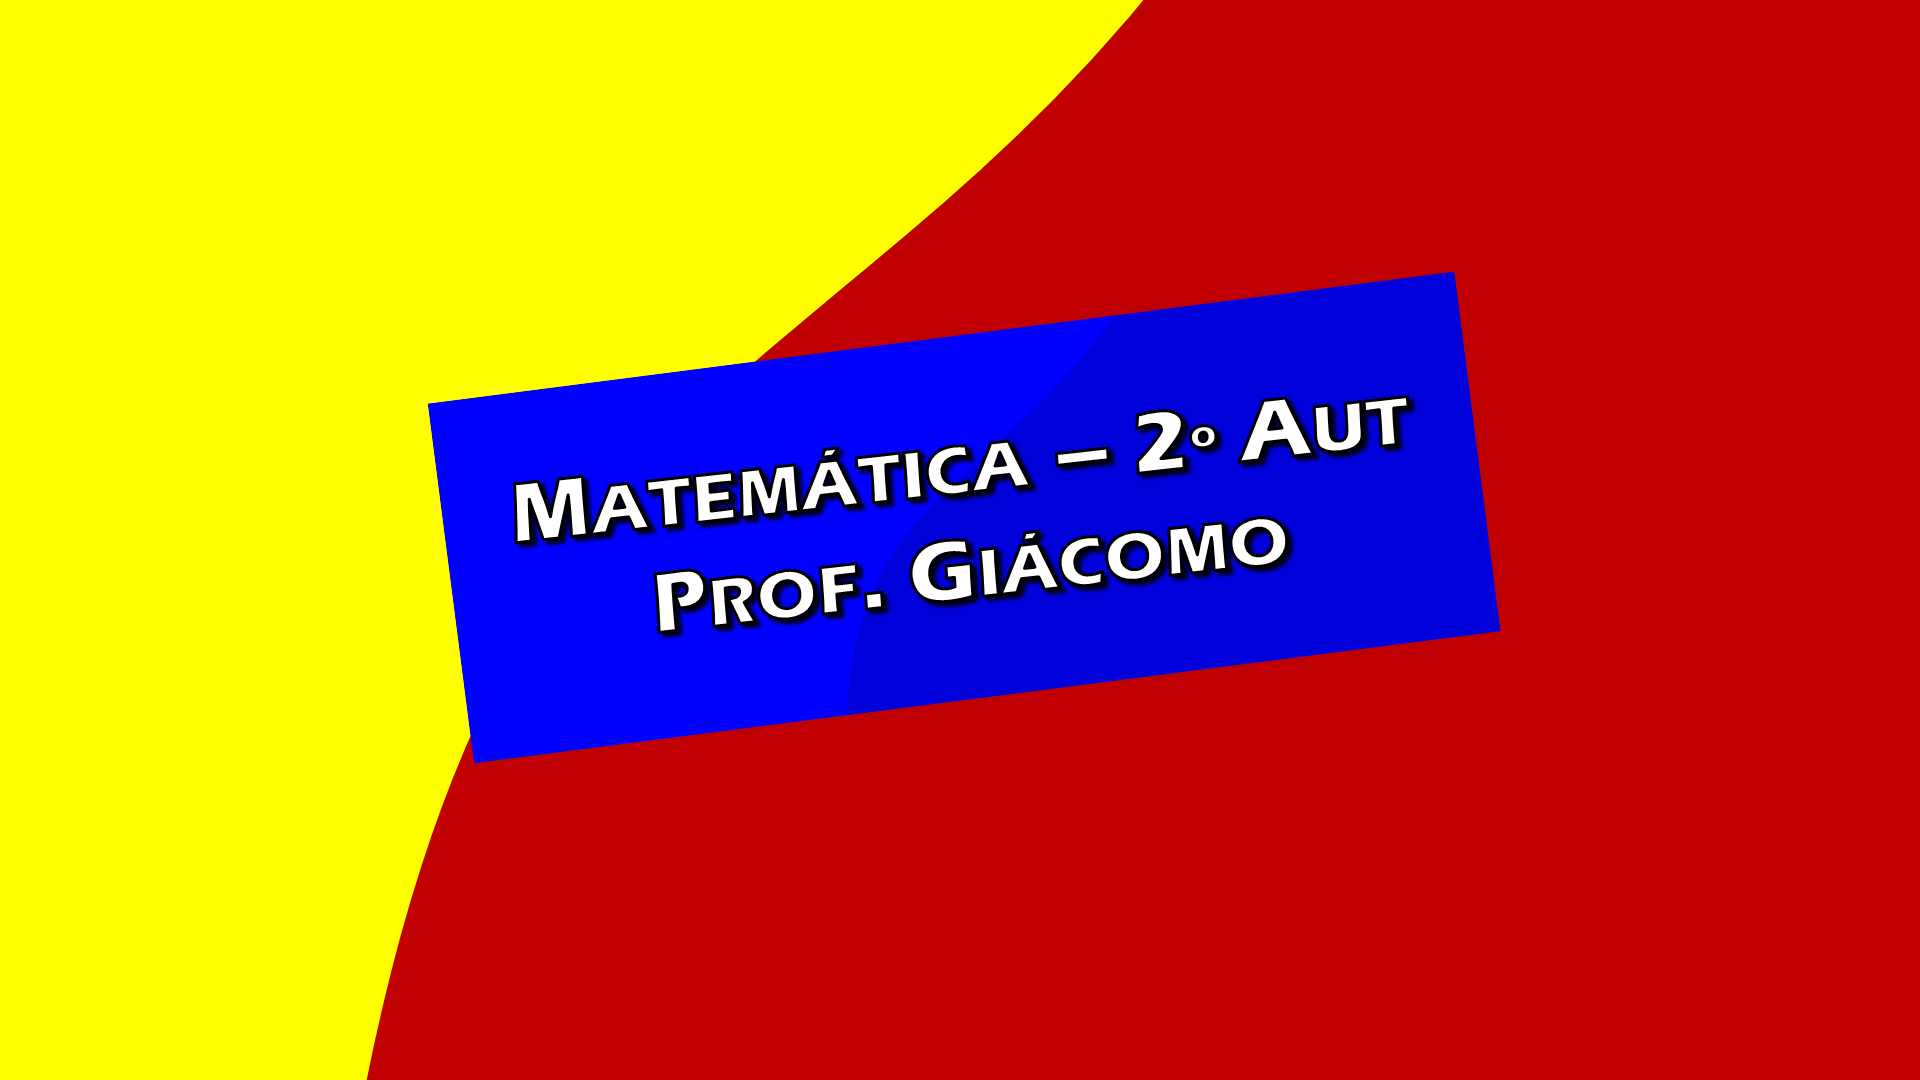 Matemática - 2o AUTOMAÇÃO - Prof Giácomo